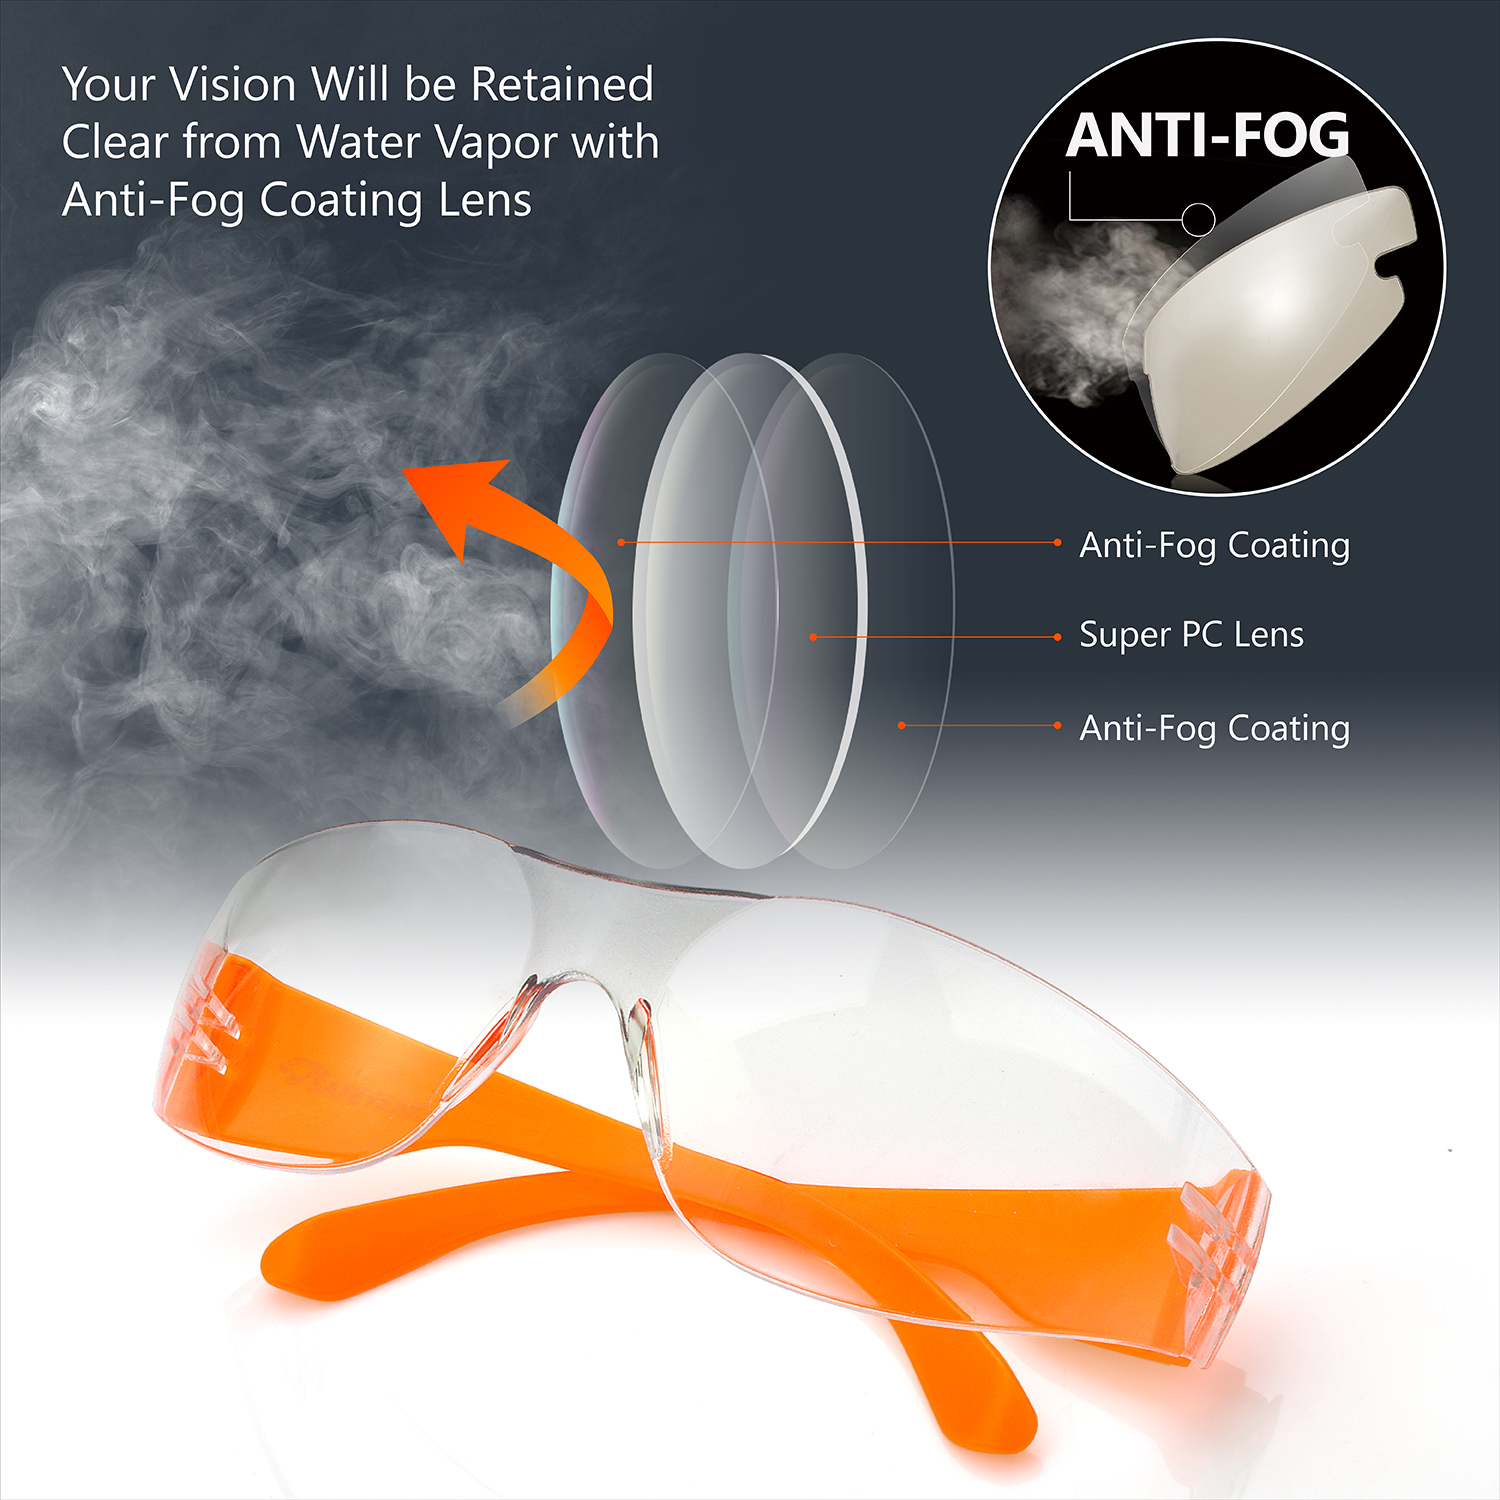 Okulary ochronne do ochrony oczu SG001 pomarańczowe